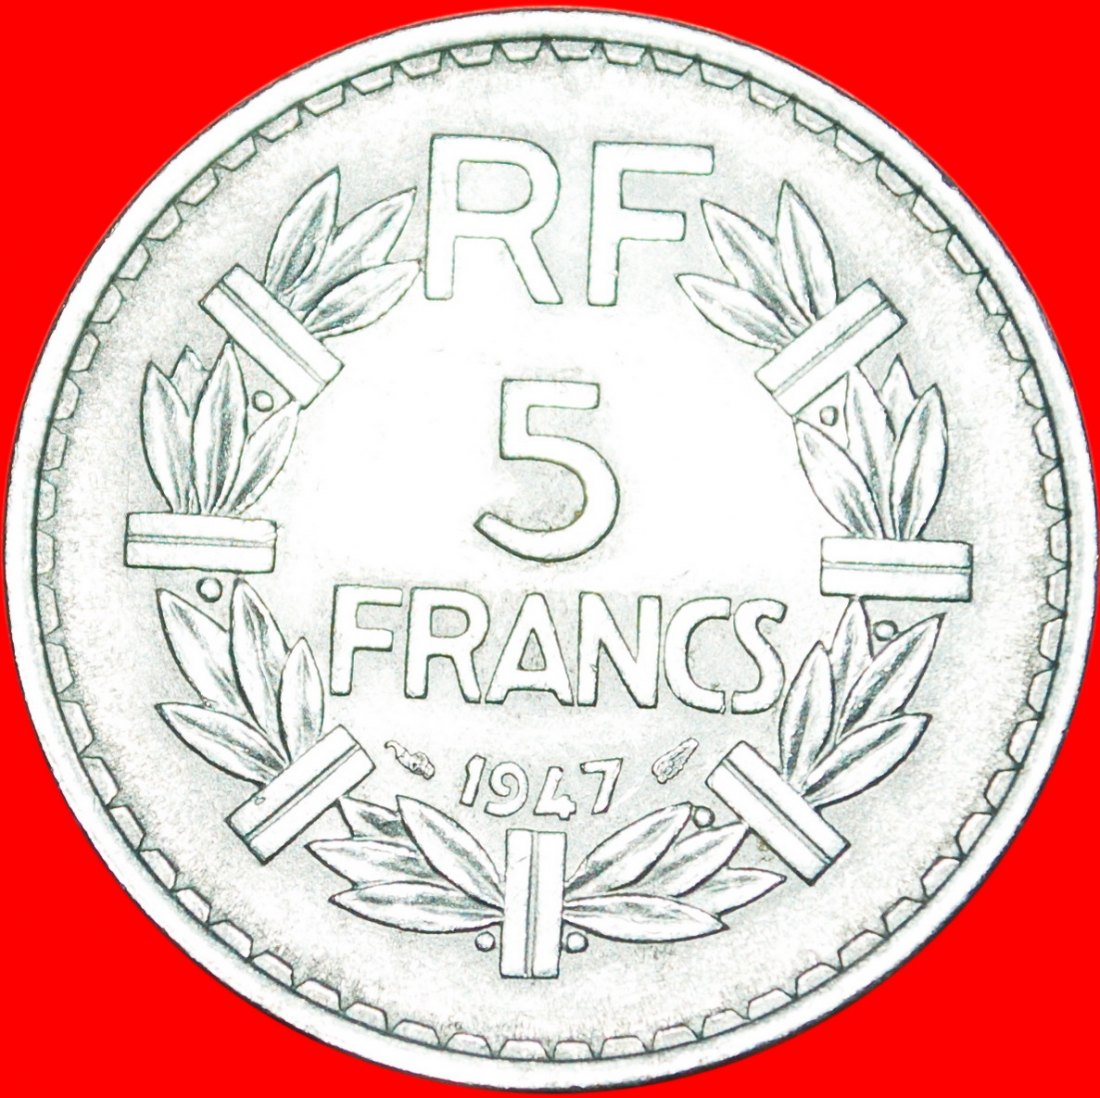  * OFFEN 9: FRANKREICH ★ 5 FRANC 1947 UNGEWÖHNLICH! LOW START ★ NO RESERVE!   